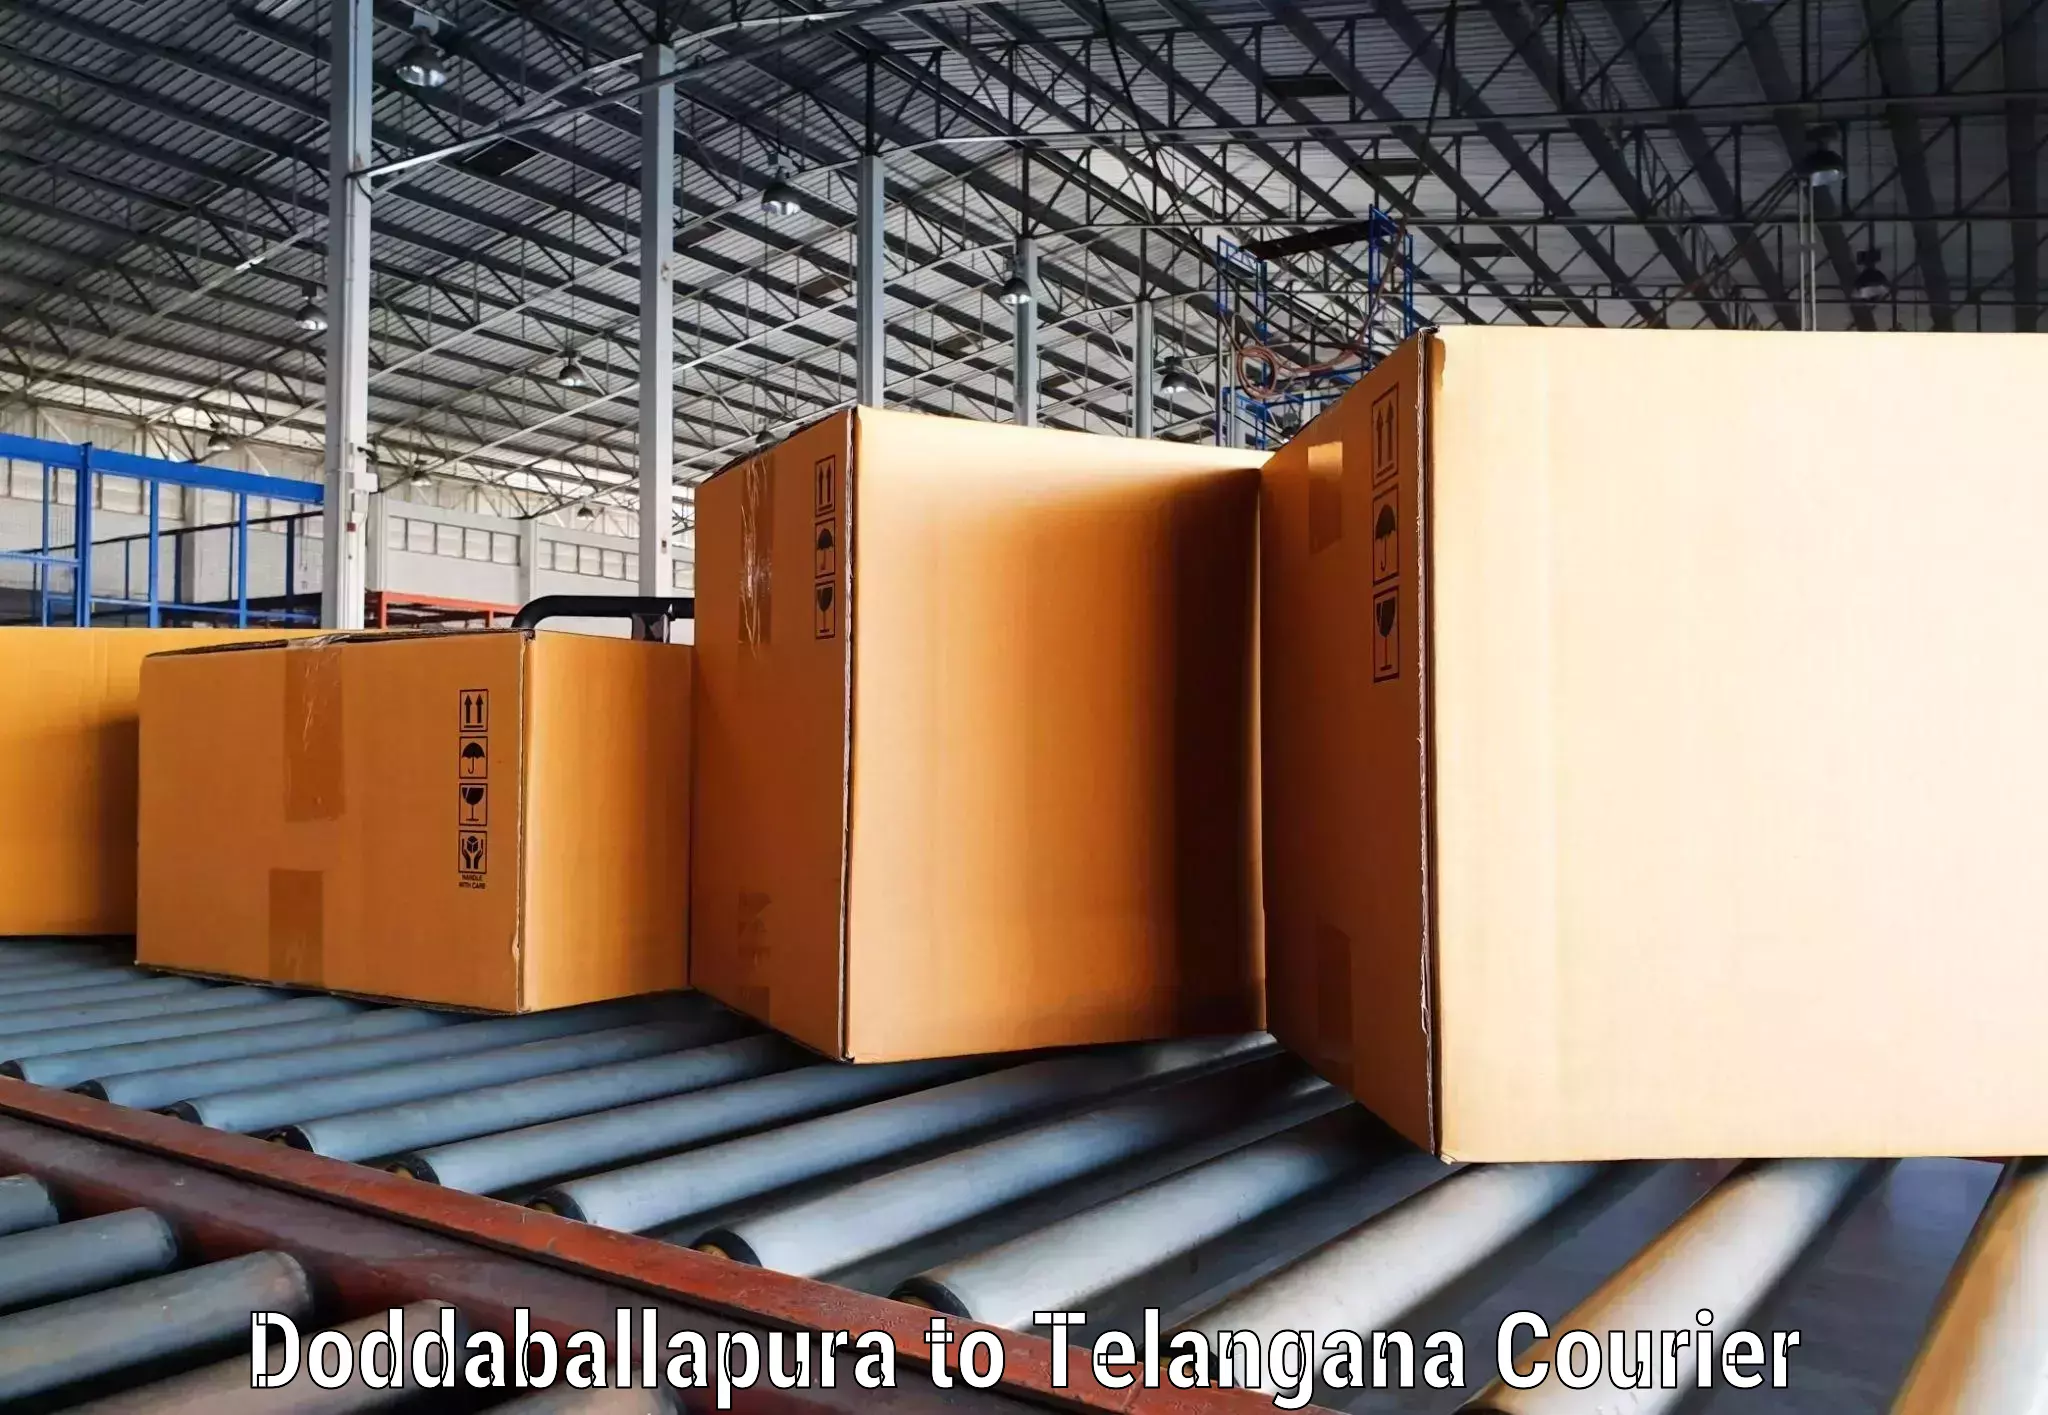 Sustainable shipping practices Doddaballapura to Kollapur